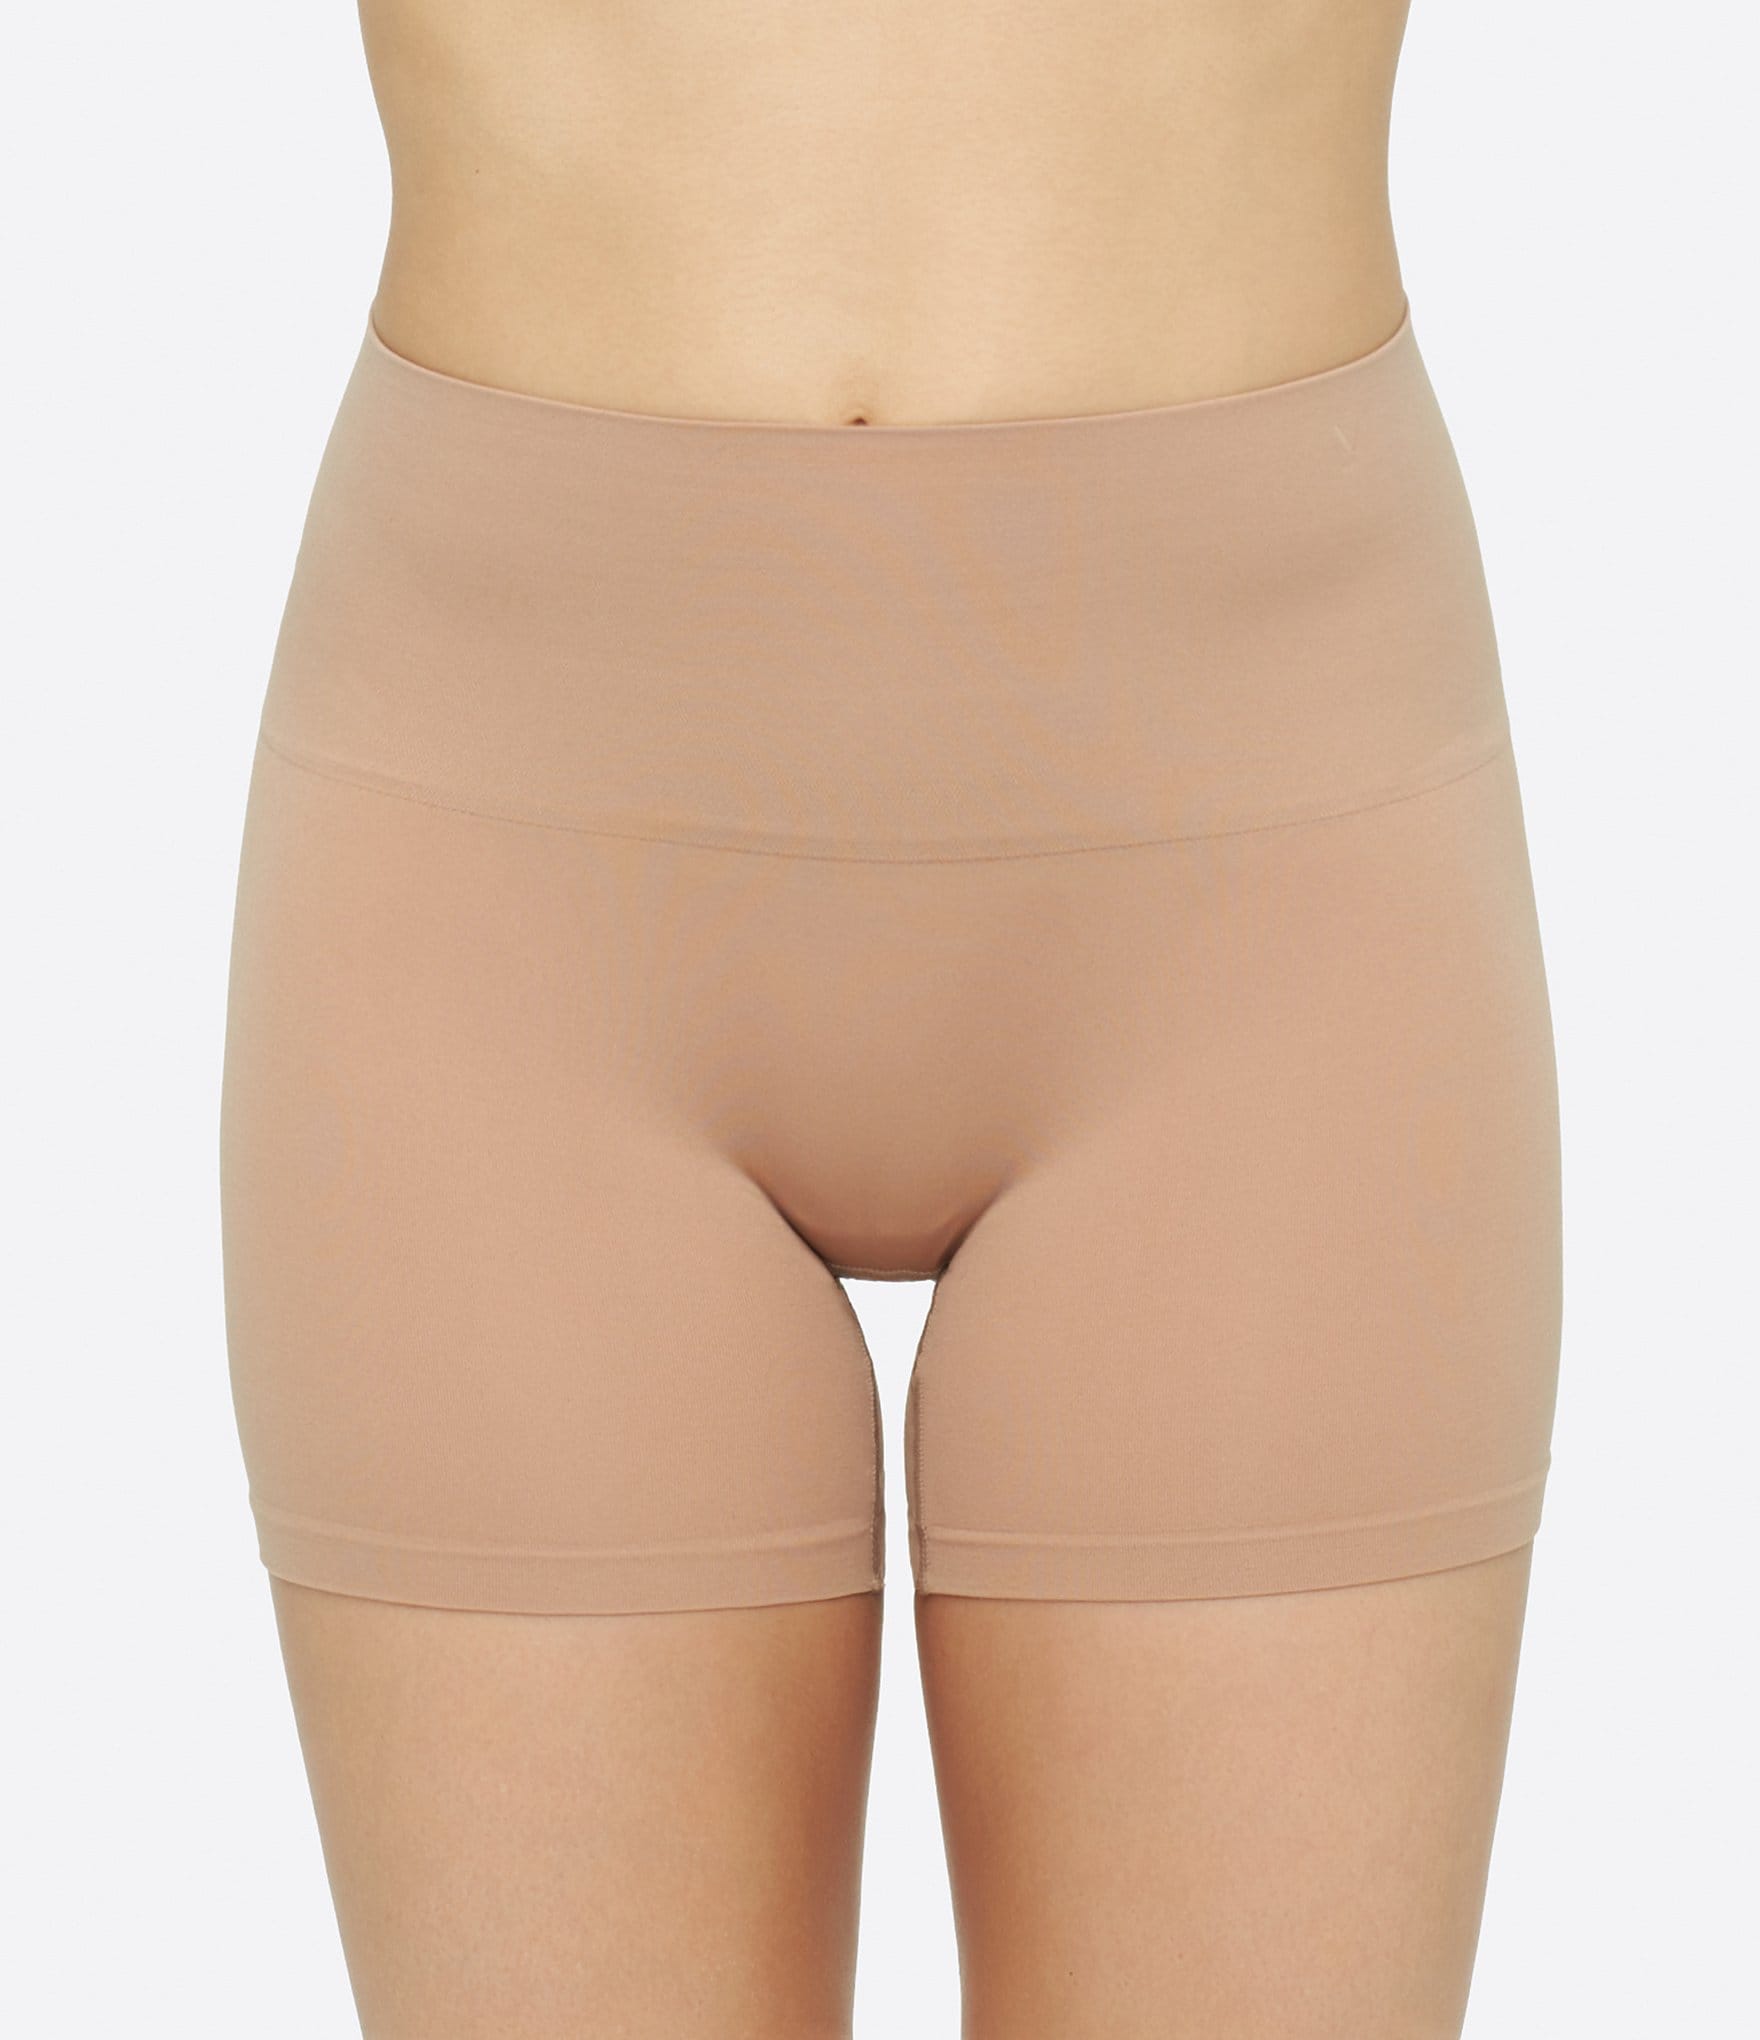 JDEFEG Seamless Slip Shorts for Women Women's Solid Pants Glare